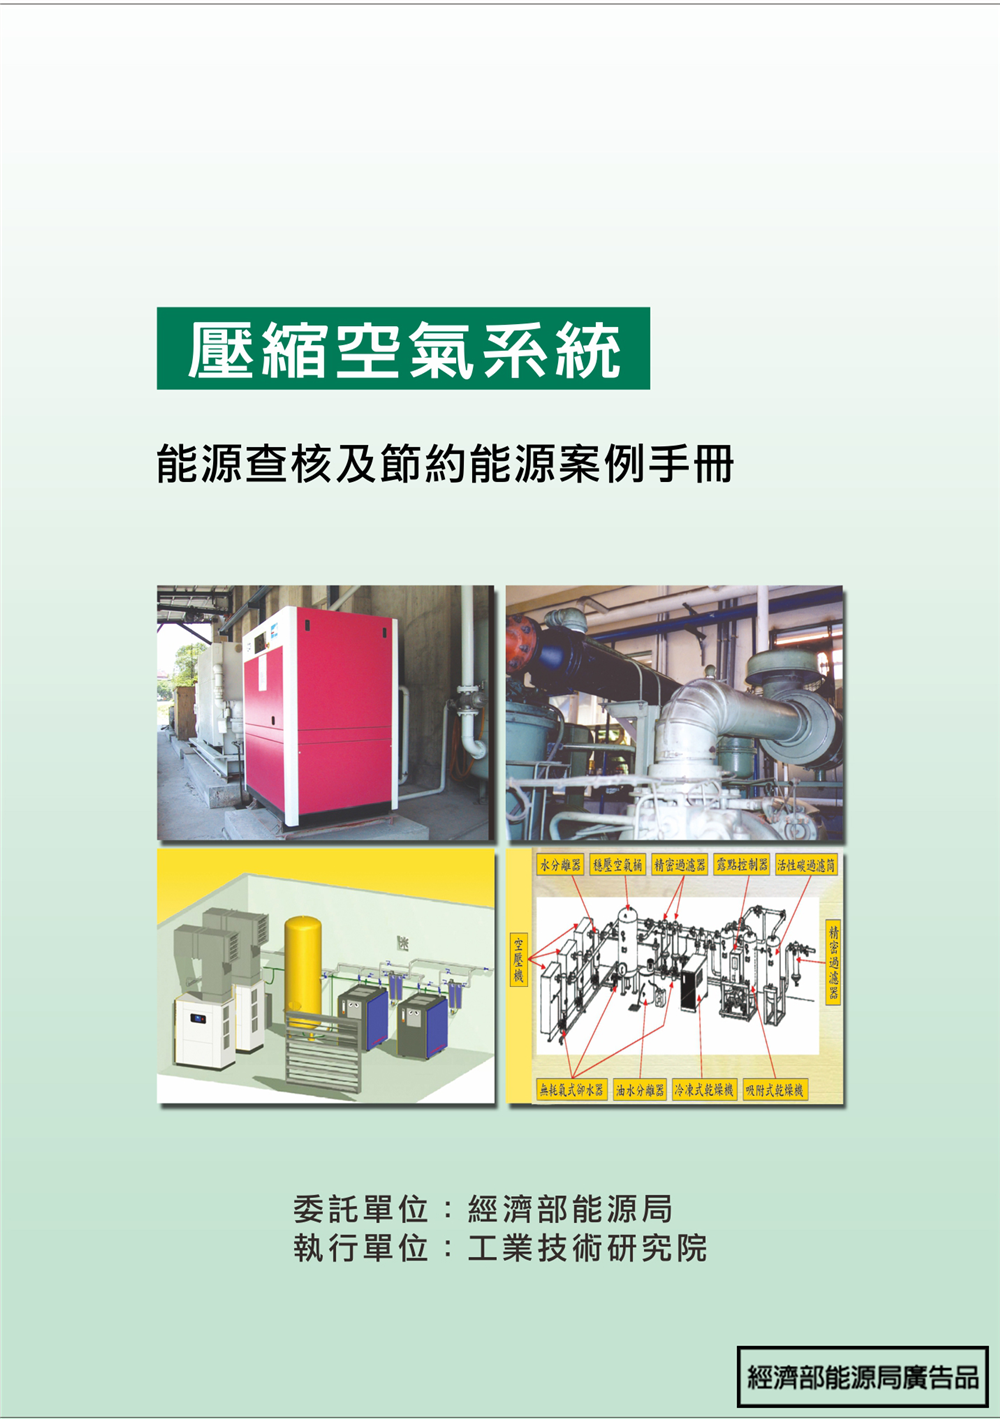 能源查核與節約能源案例手冊-壓縮空氣系統 的封面圖